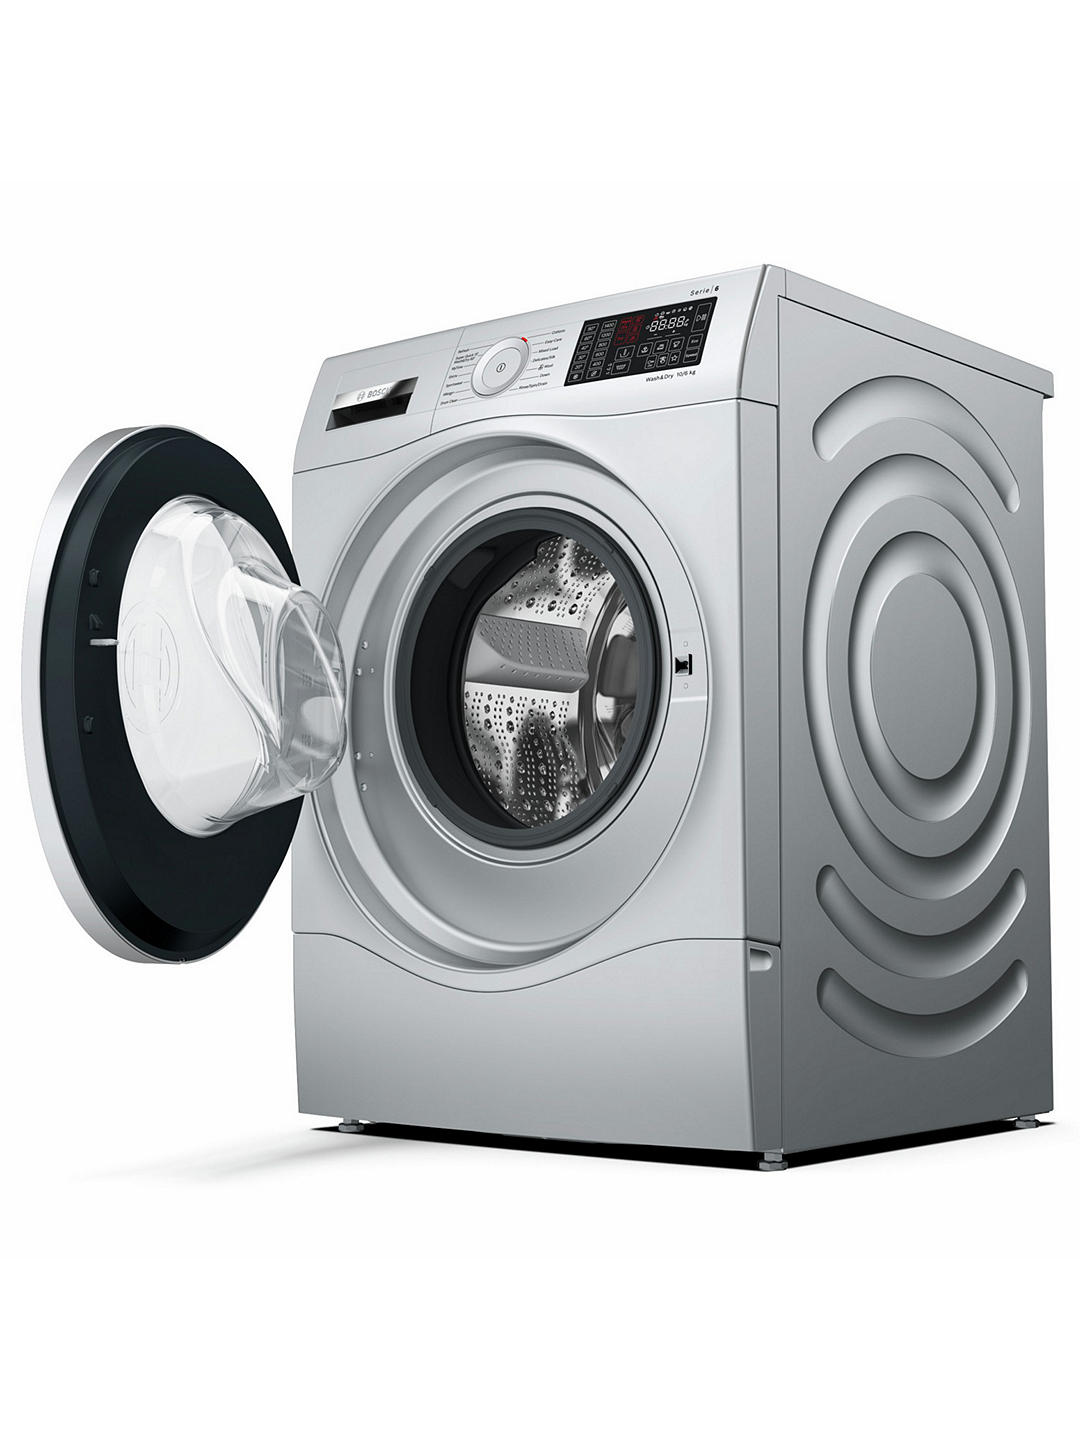 Bosch WDU28568GB Freestanding Washer Dryer, 10kg Wash/6kg Dry Load, A Bosch Stainless Steel Washer Dryer